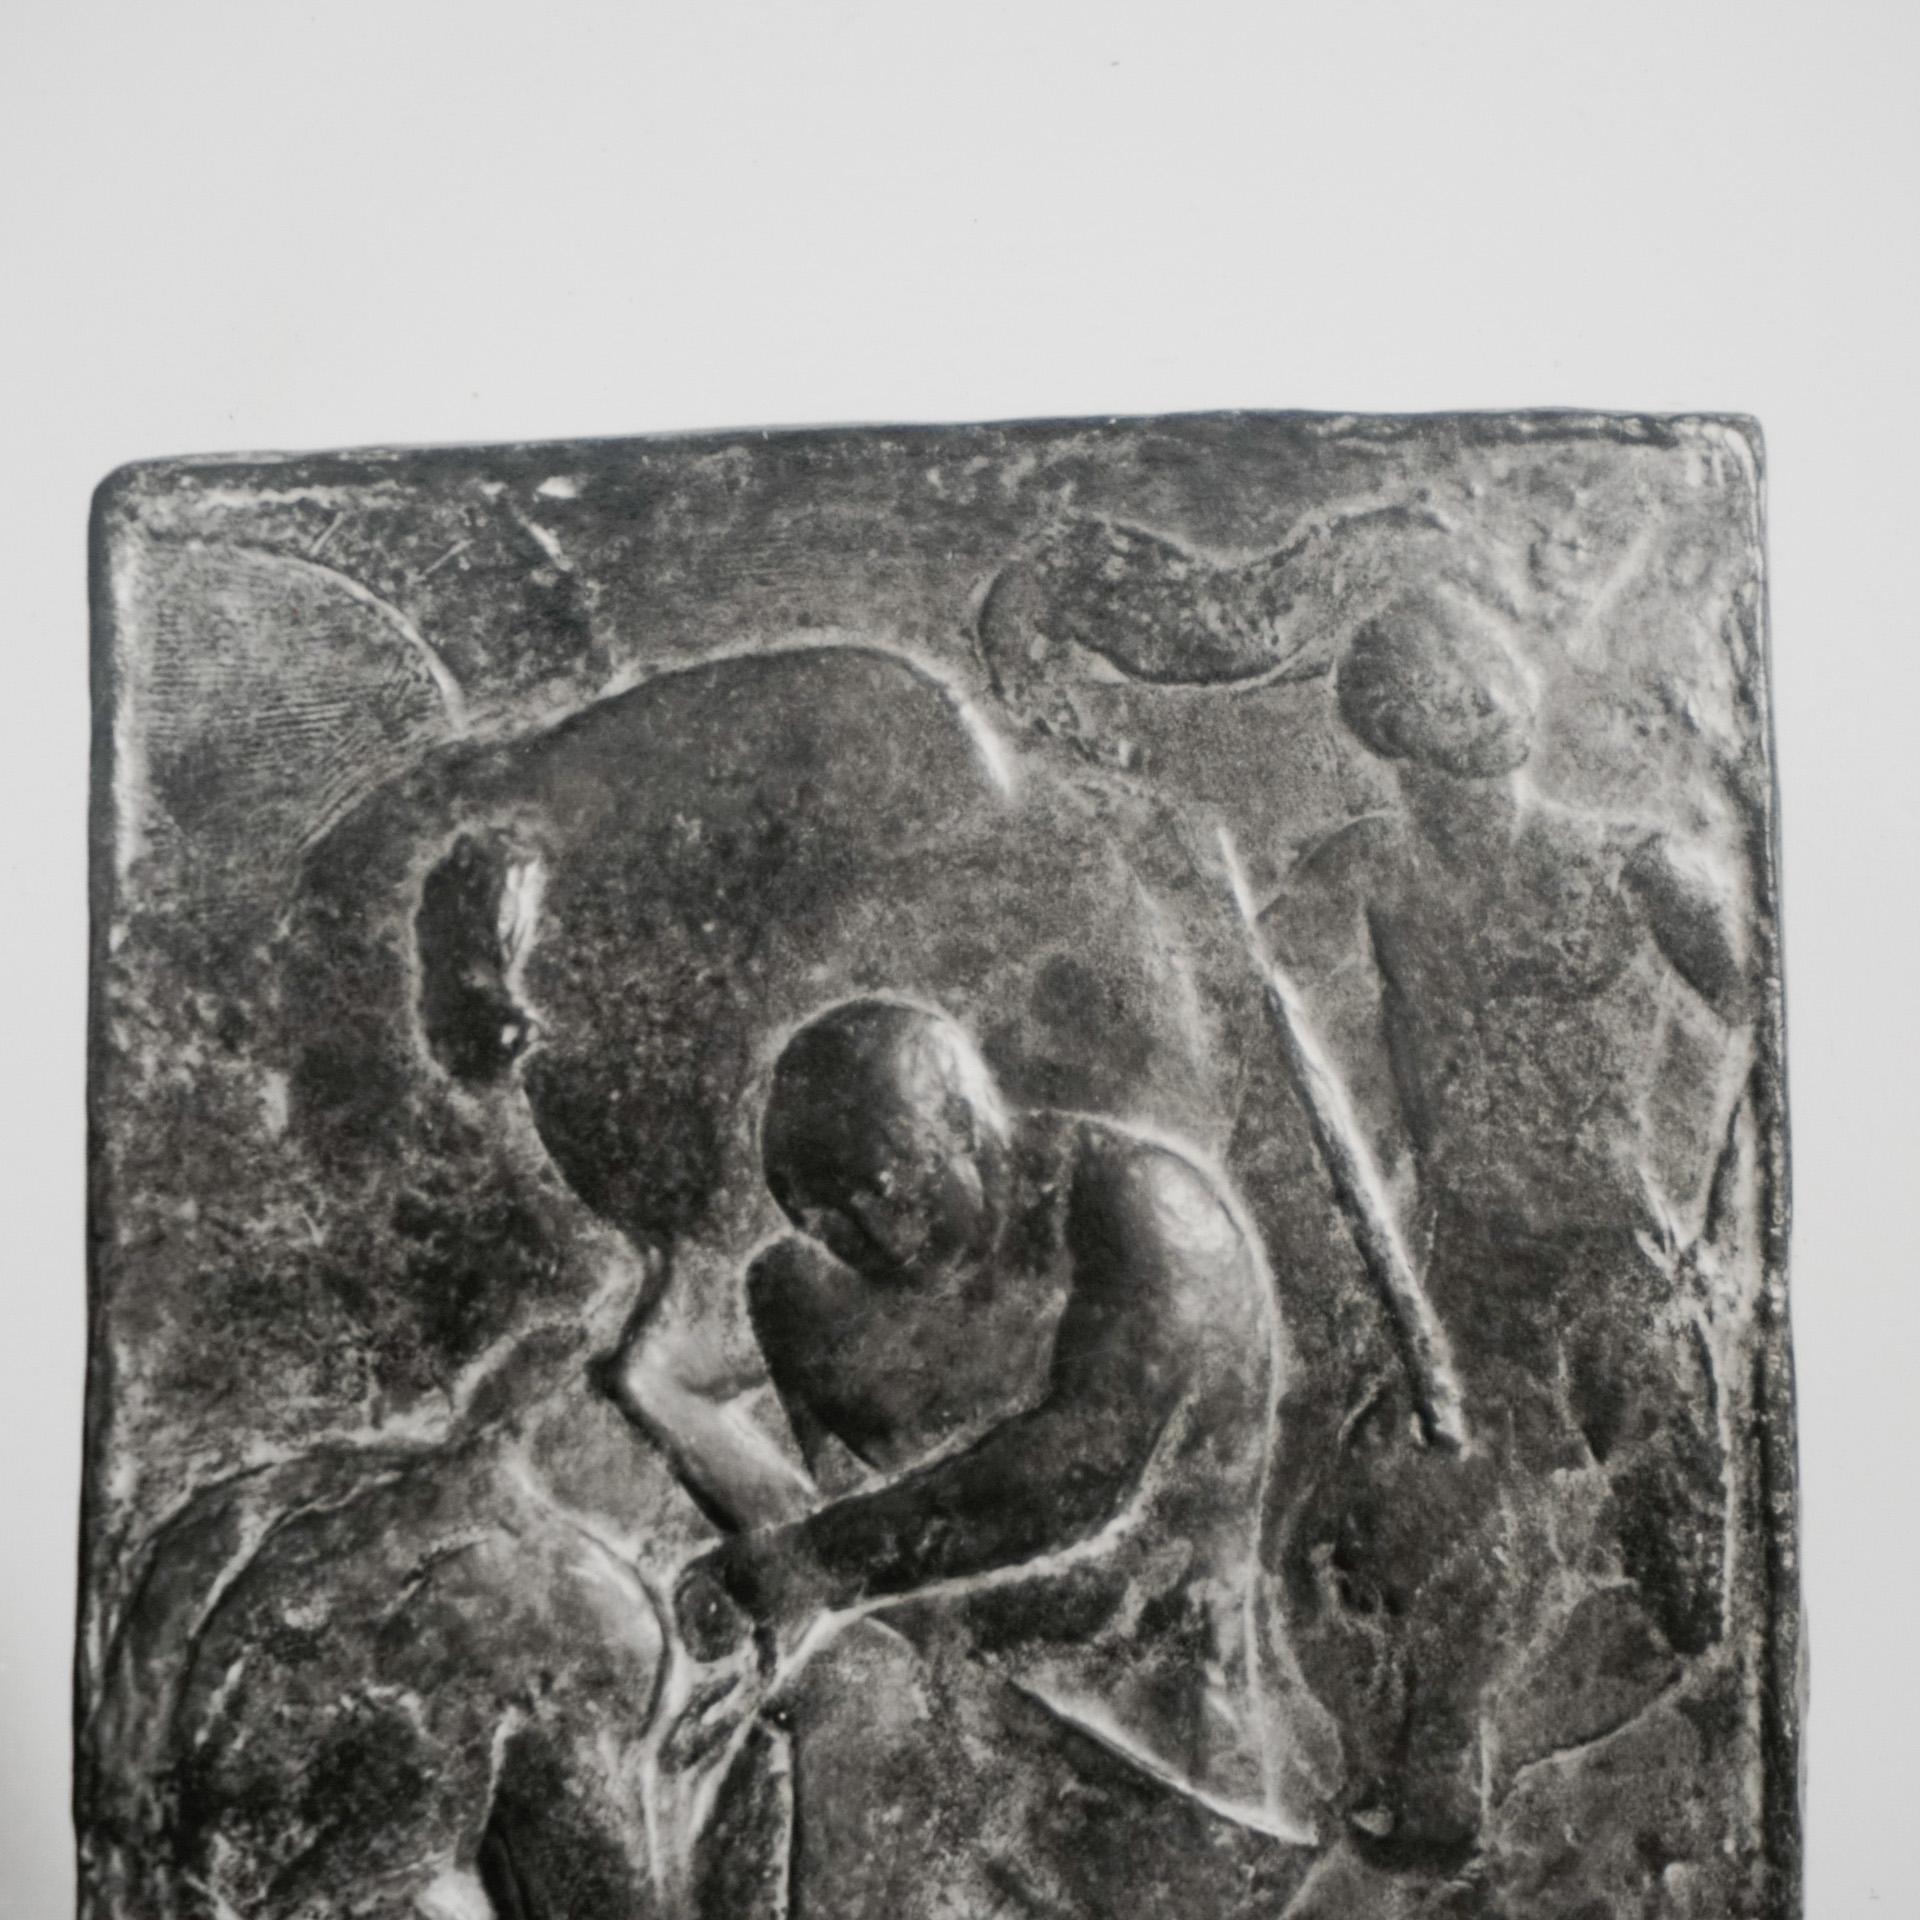 Milieu du XXe siècle Photographie de sculpture d'archives Manolo Hugue, datant d'environ 1960